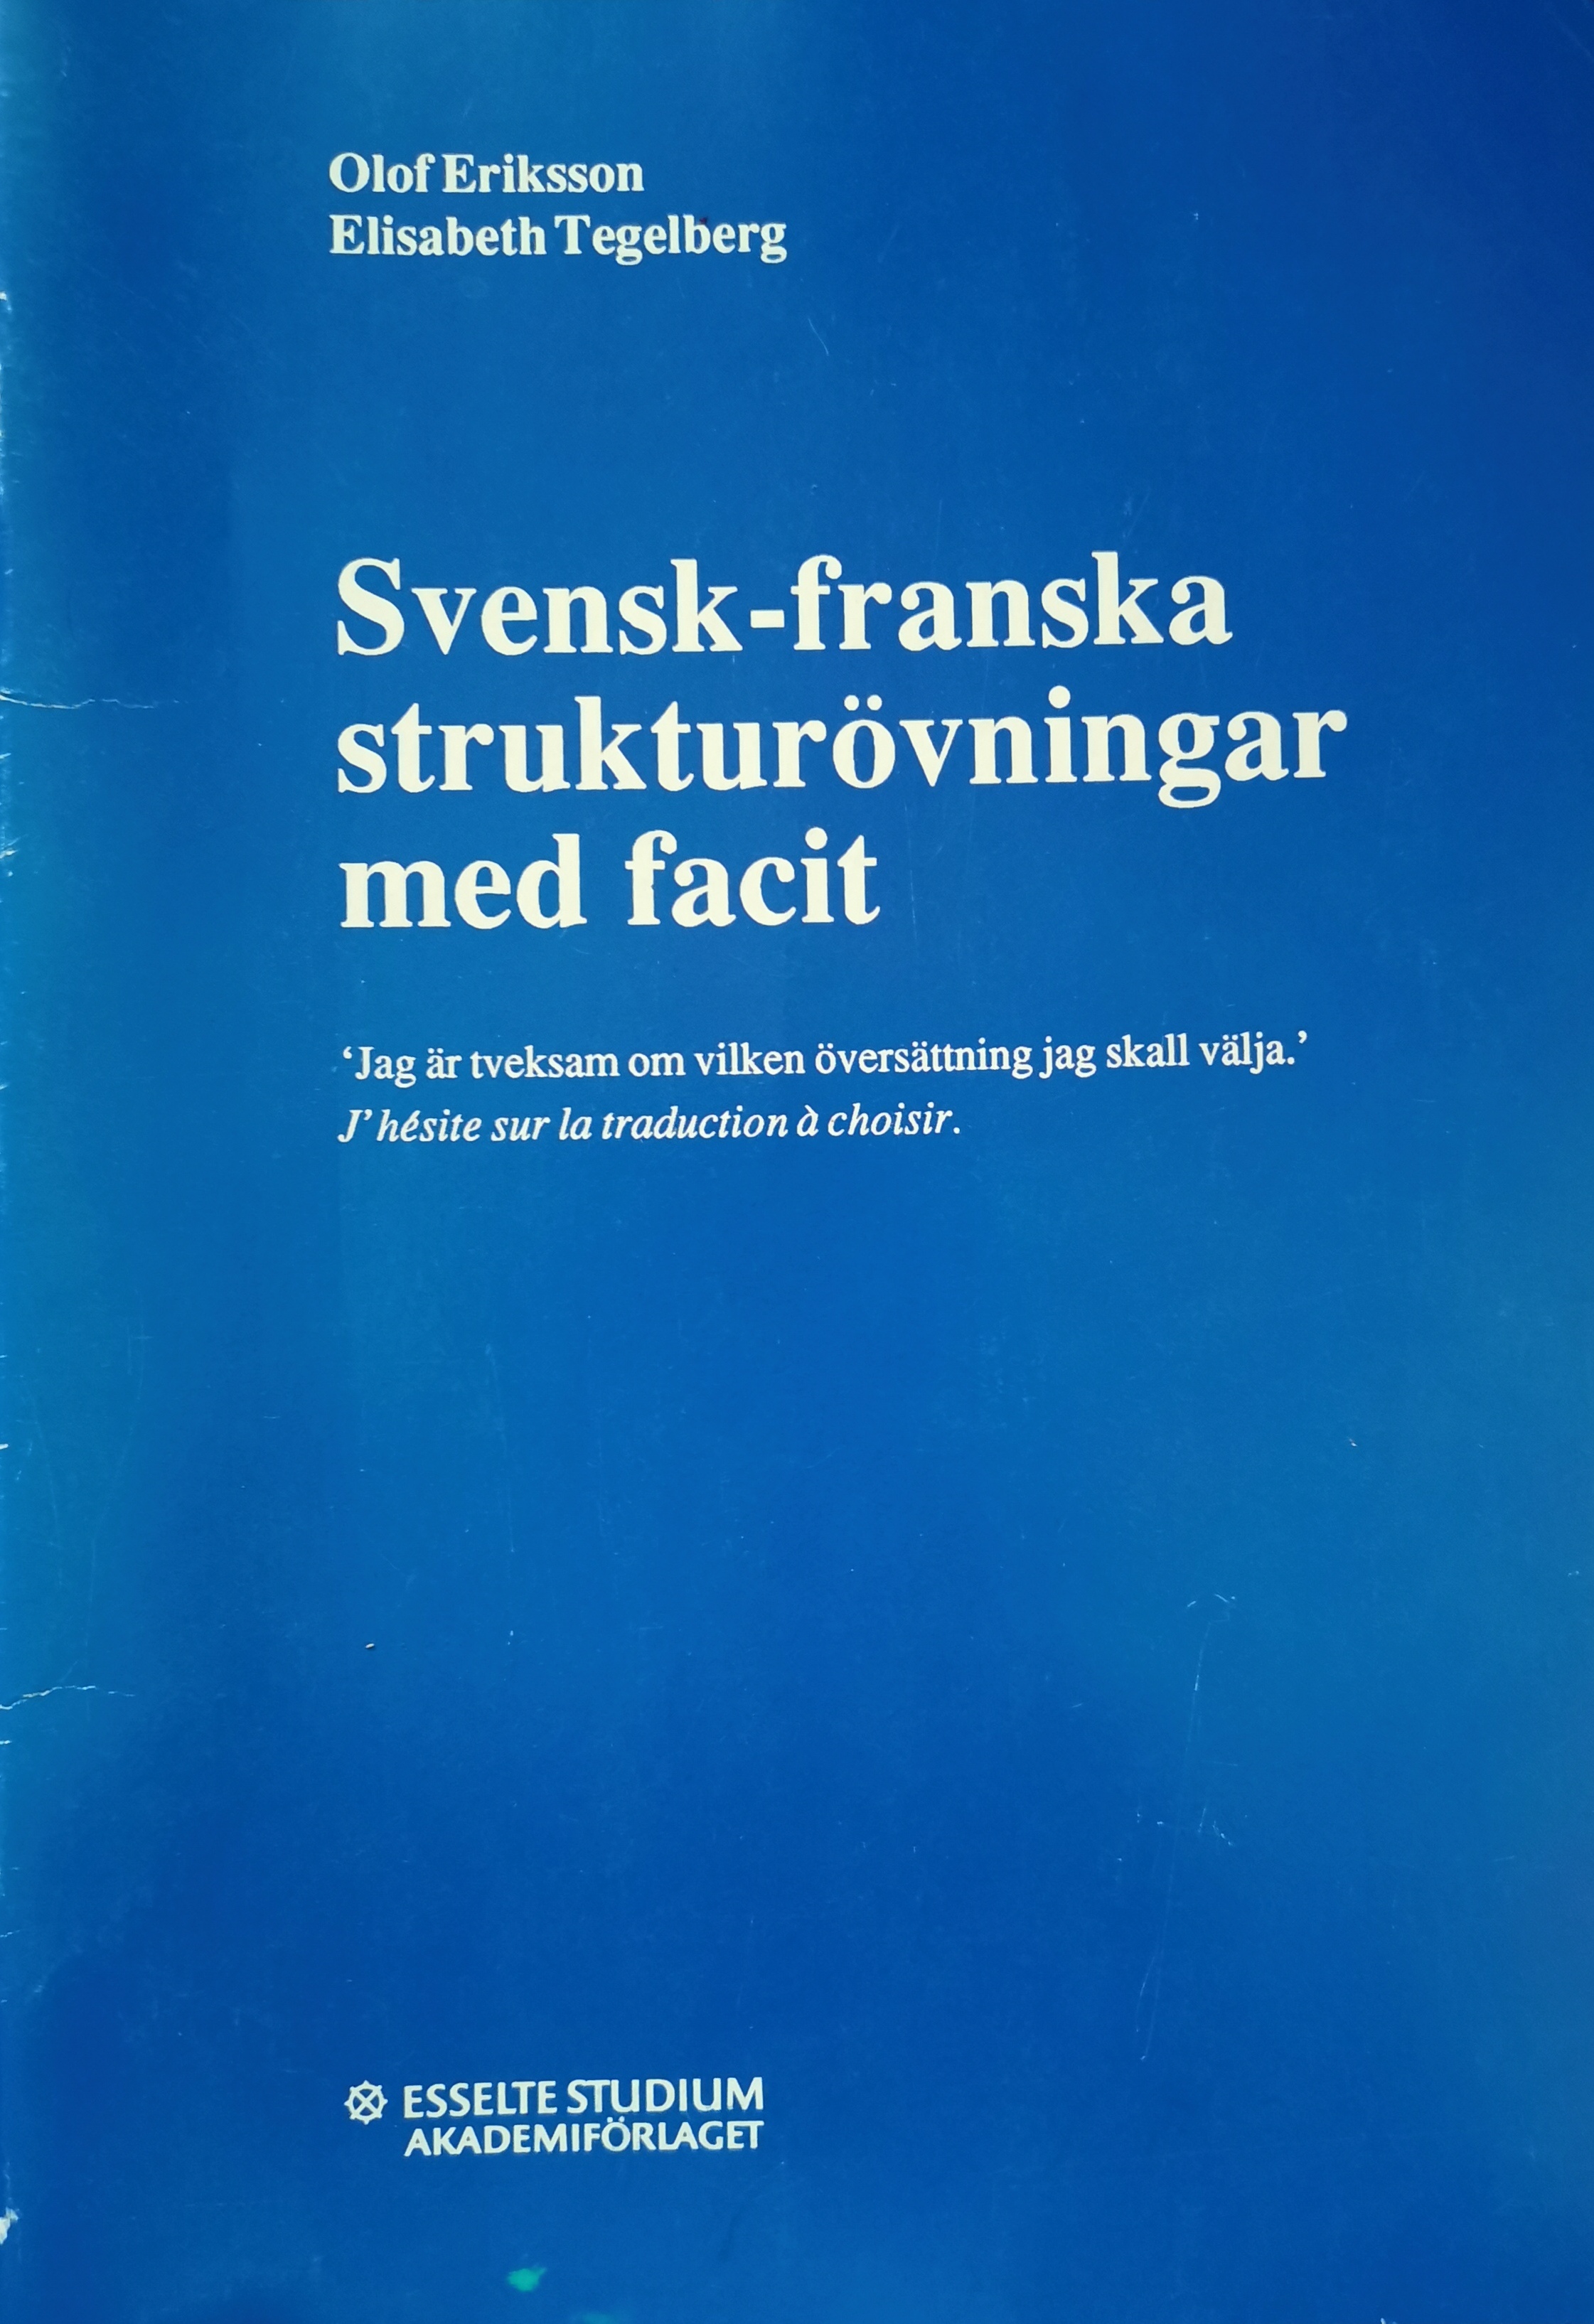 Svensk-franska strukturövningar; Olof Eriksson, Elisabeth Tegelberg; 1989